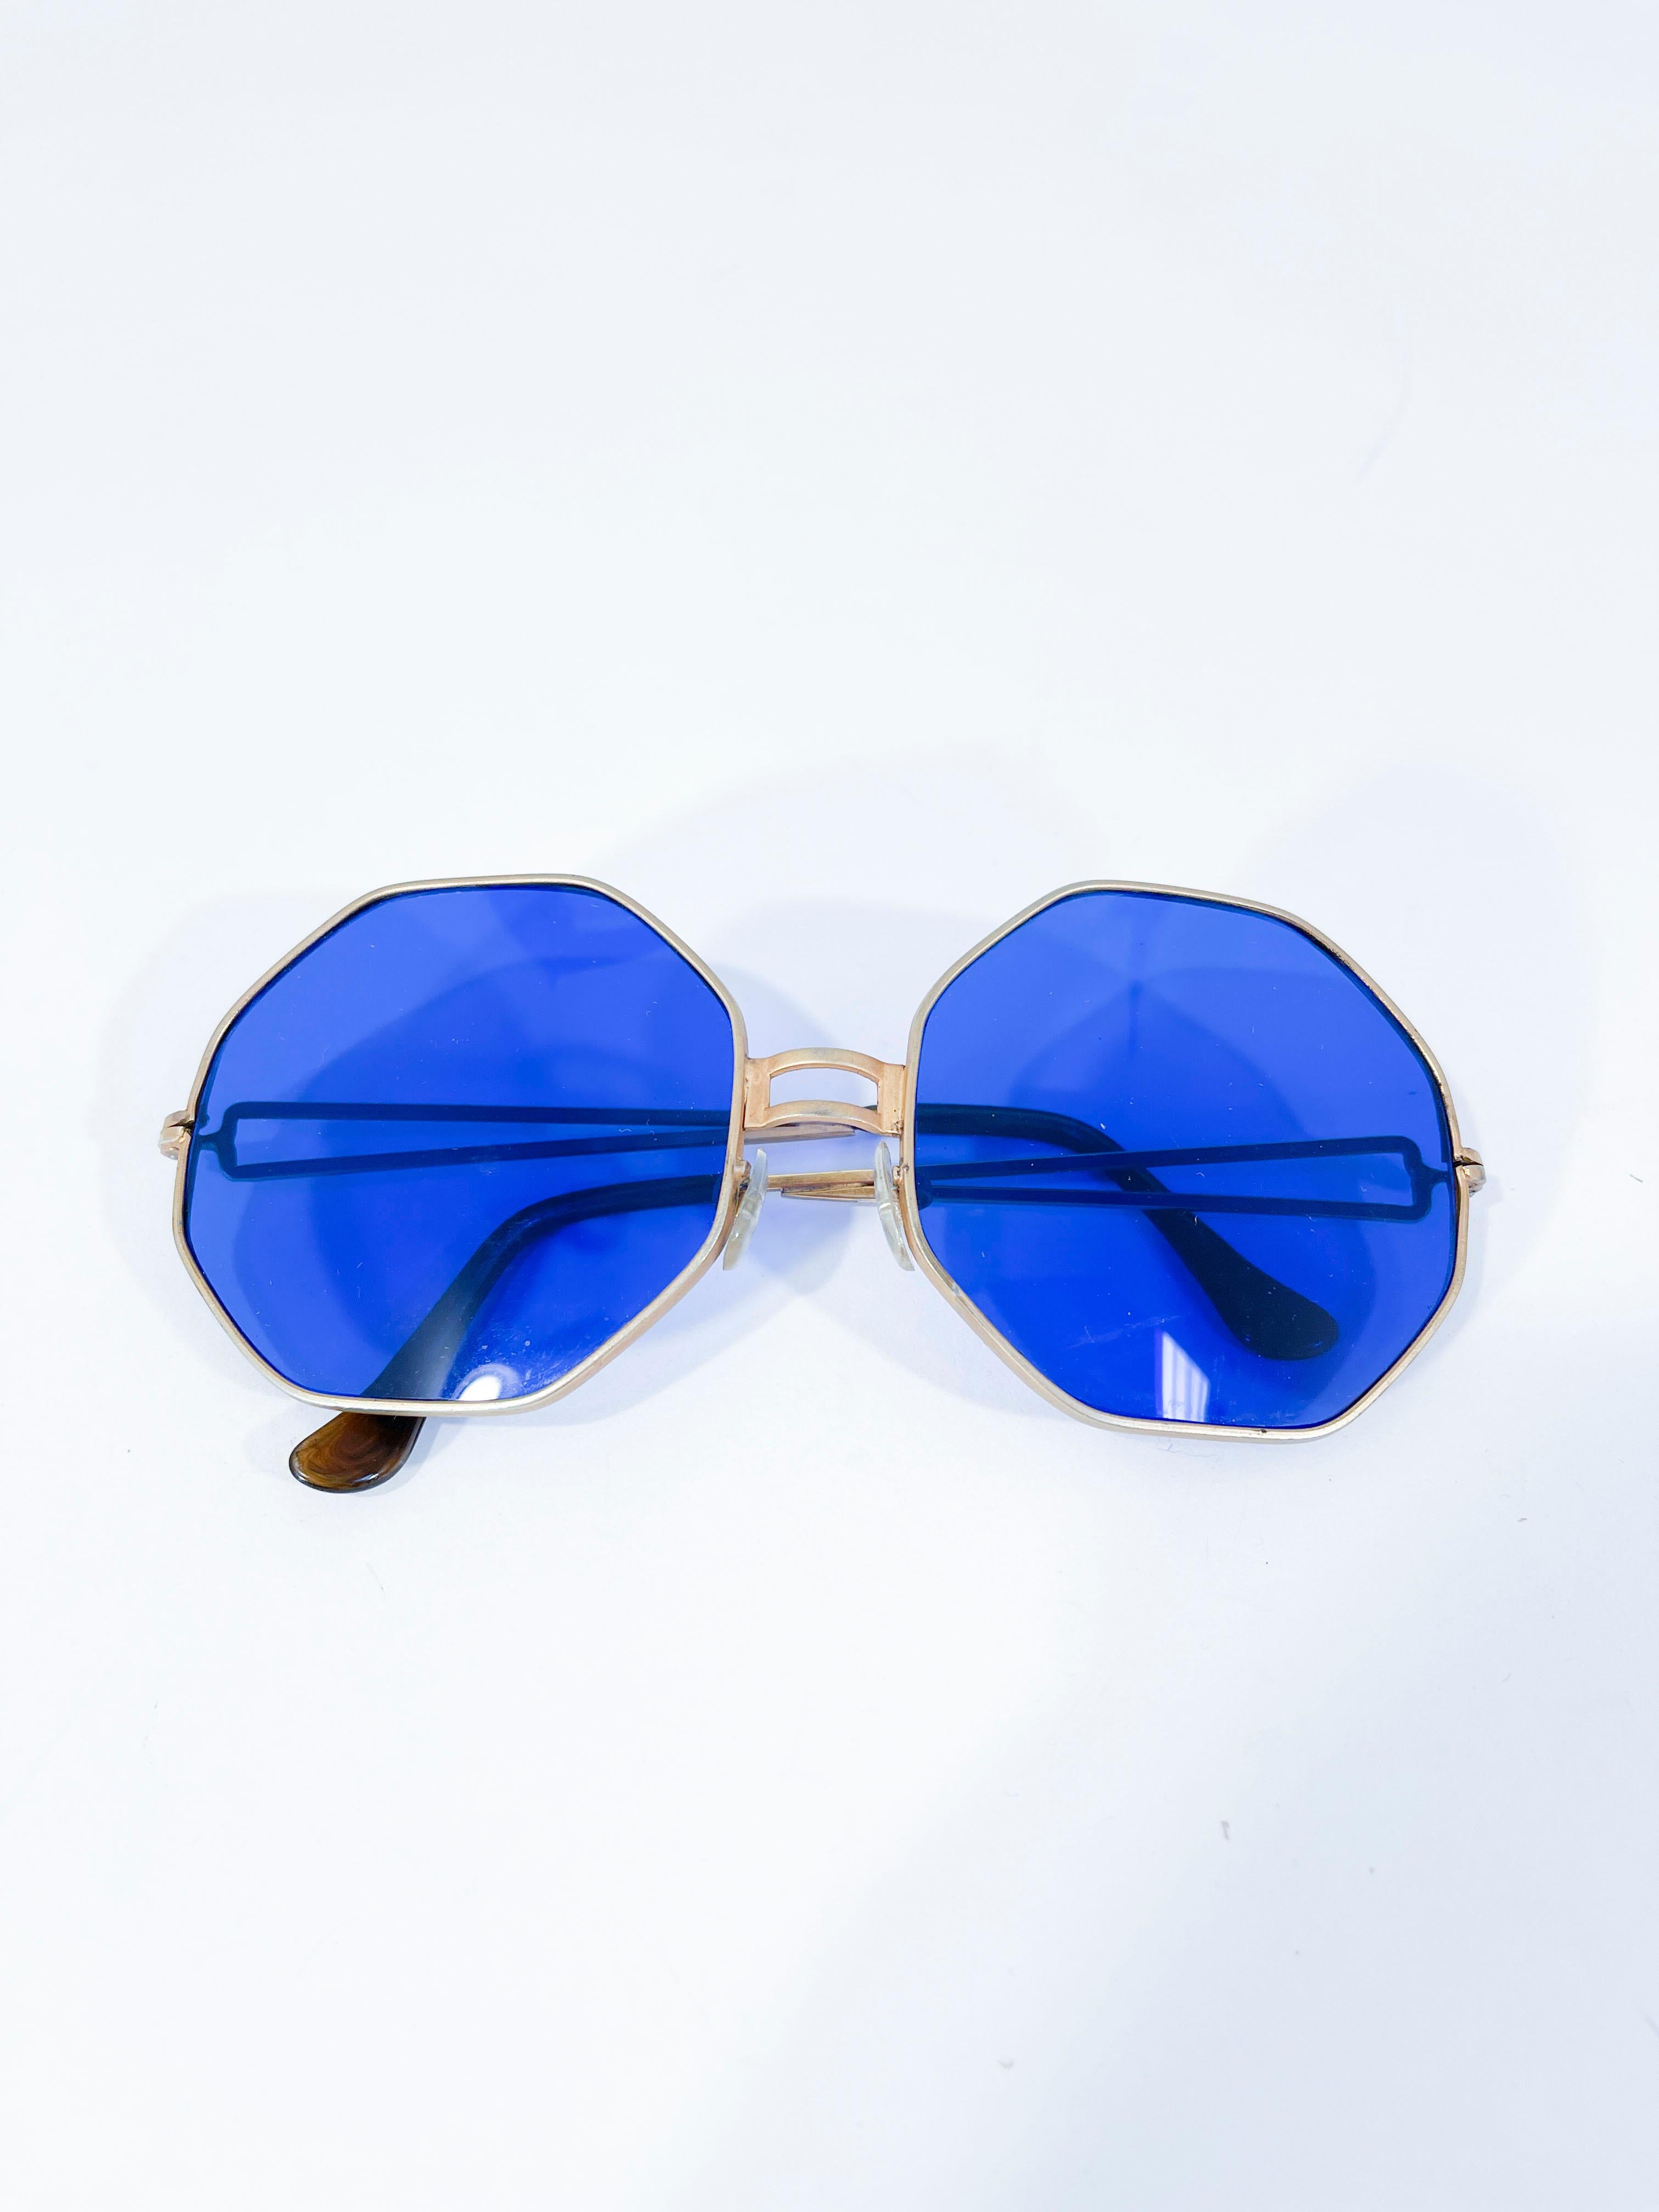 VTG 1960s Deadstock BLUE Lense OCTAGONAL Sunglasses